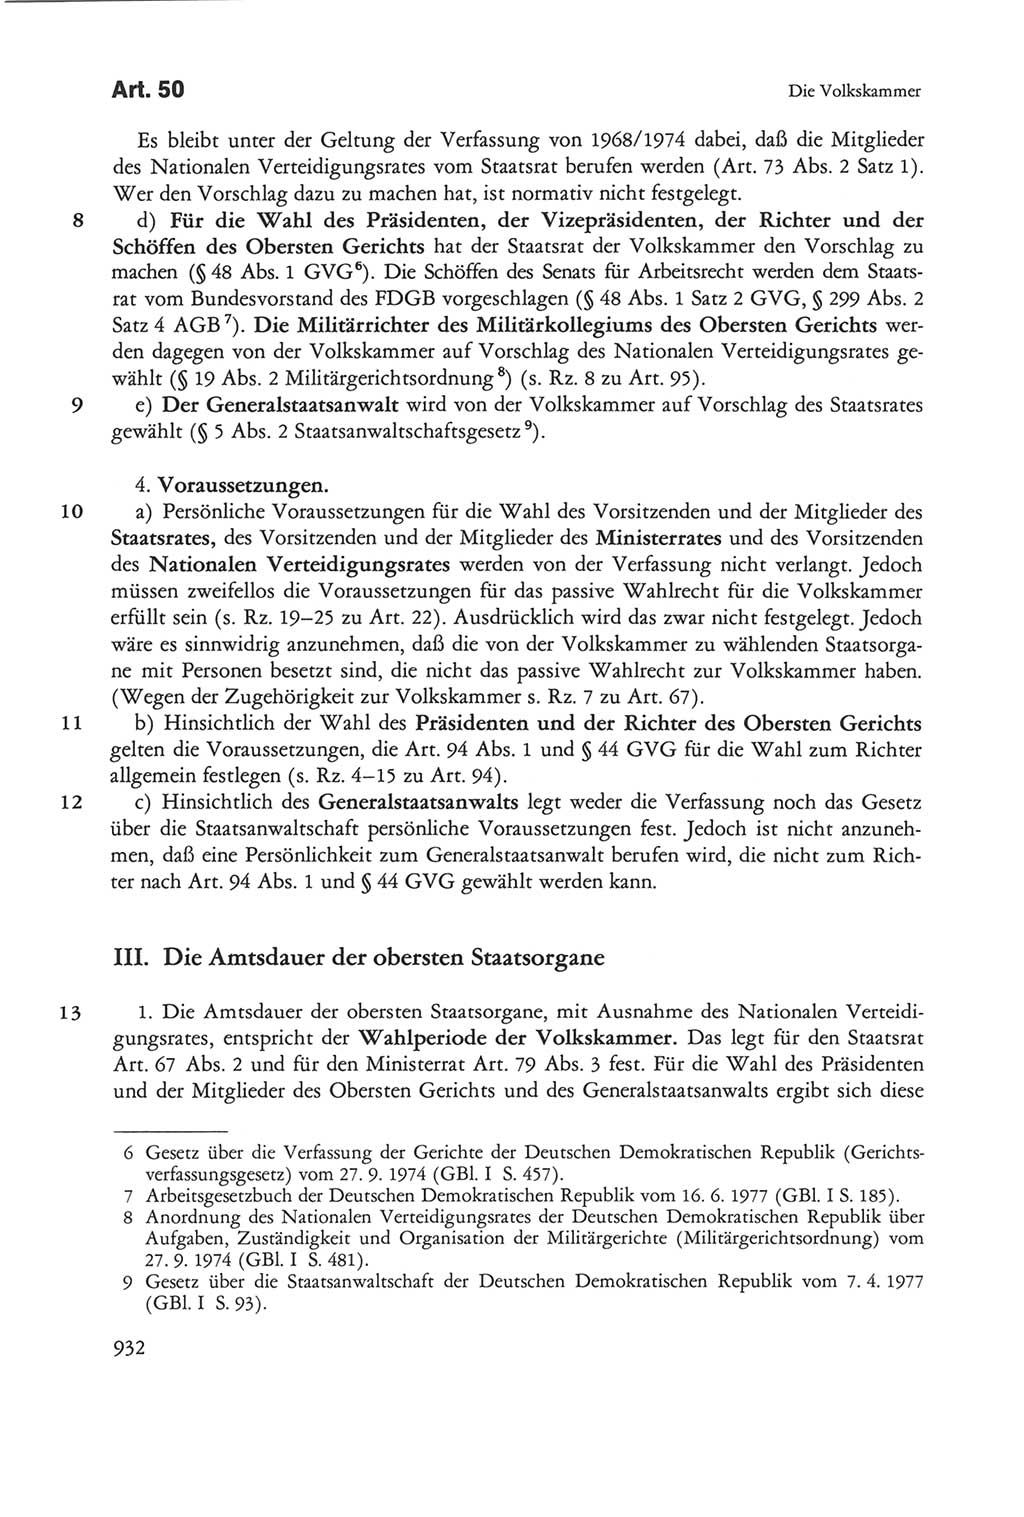 Die sozialistische Verfassung der Deutschen Demokratischen Republik (DDR), Kommentar 1982, Seite 932 (Soz. Verf. DDR Komm. 1982, S. 932)